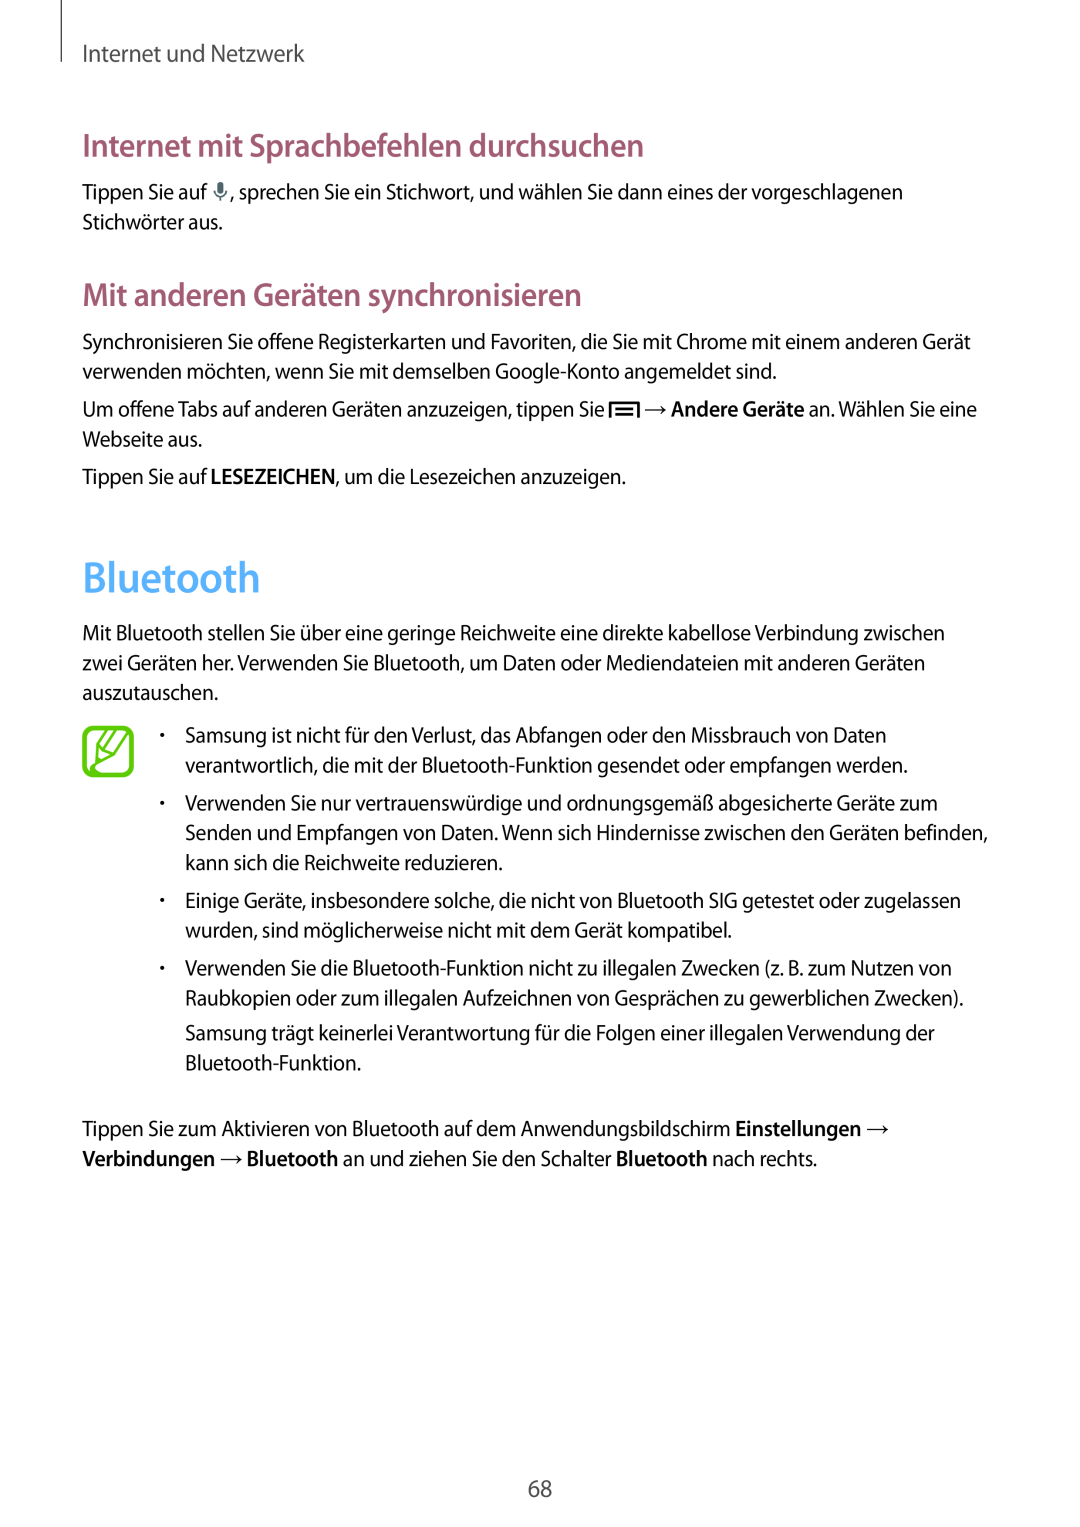 Samsung SM-P6050ZKAEUR manual Bluetooth, Mit anderen Geräten synchronisieren, Internet mit Sprachbefehlen durchsuchen 